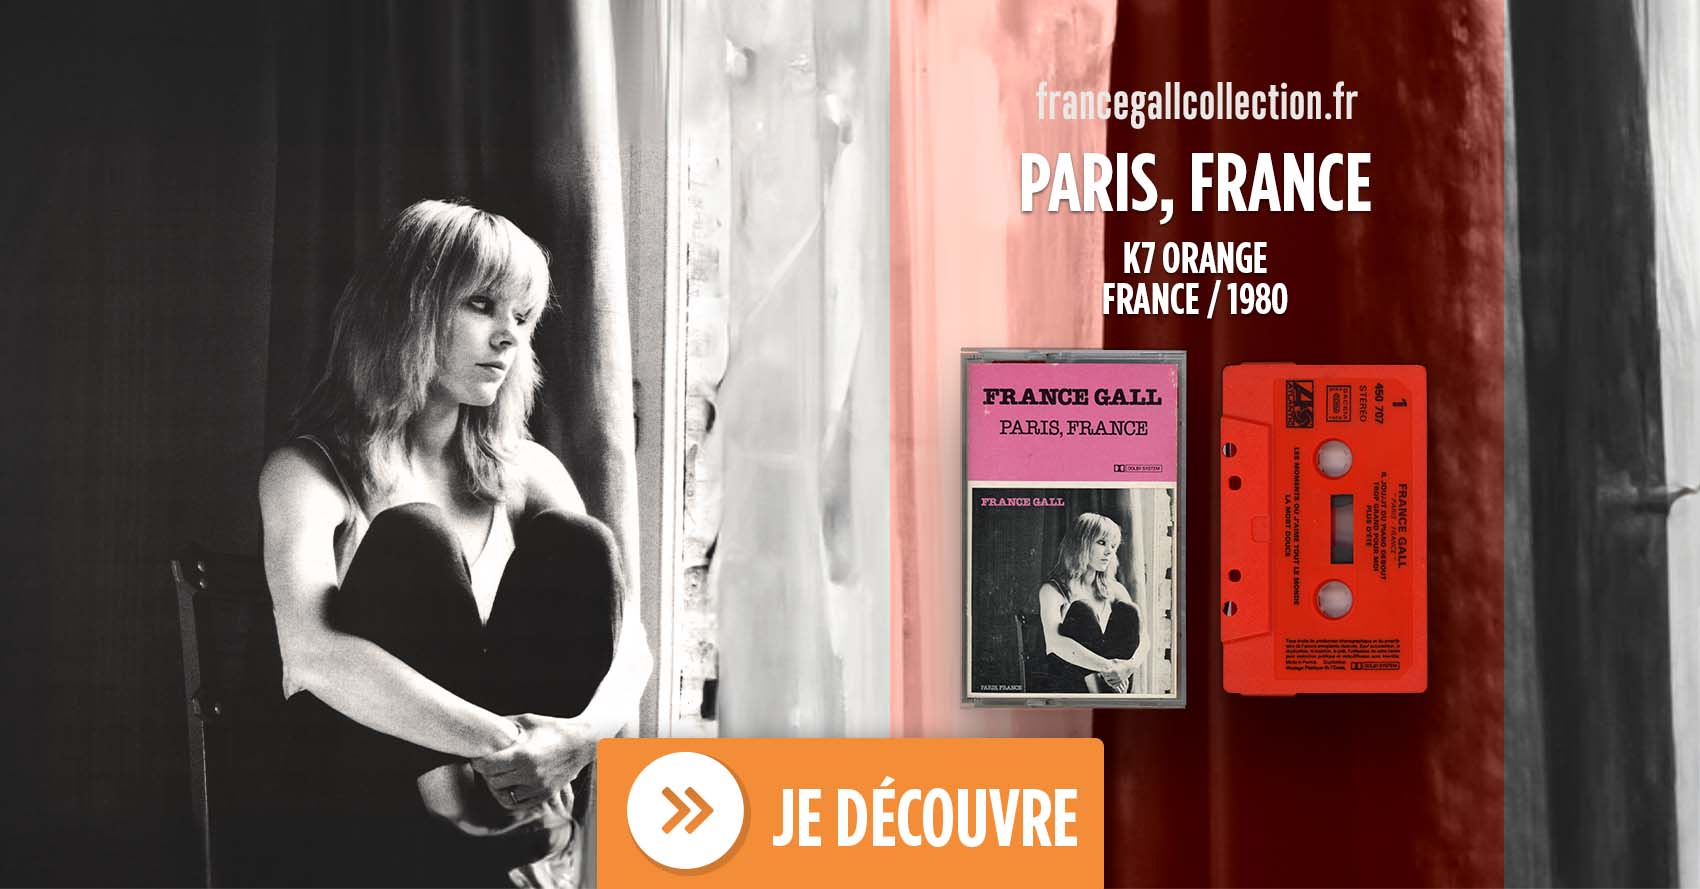 Edition au format cassette, de couleur orange, du 19 mai 1980 de Paris, France, troisième album studio que Michel Berger a produit pour France Gall.